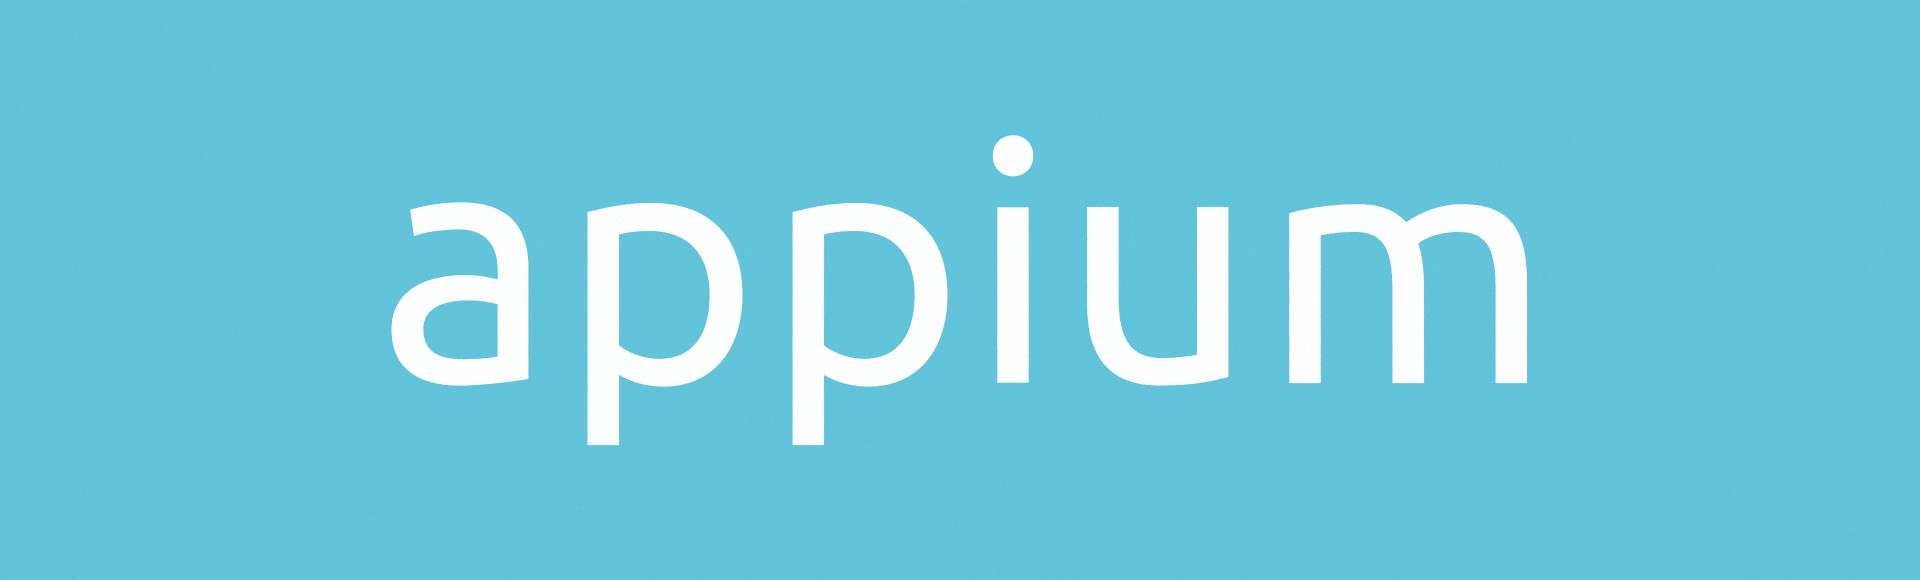 Appium Logo - Appium Brand Design. Branding & Design Studio